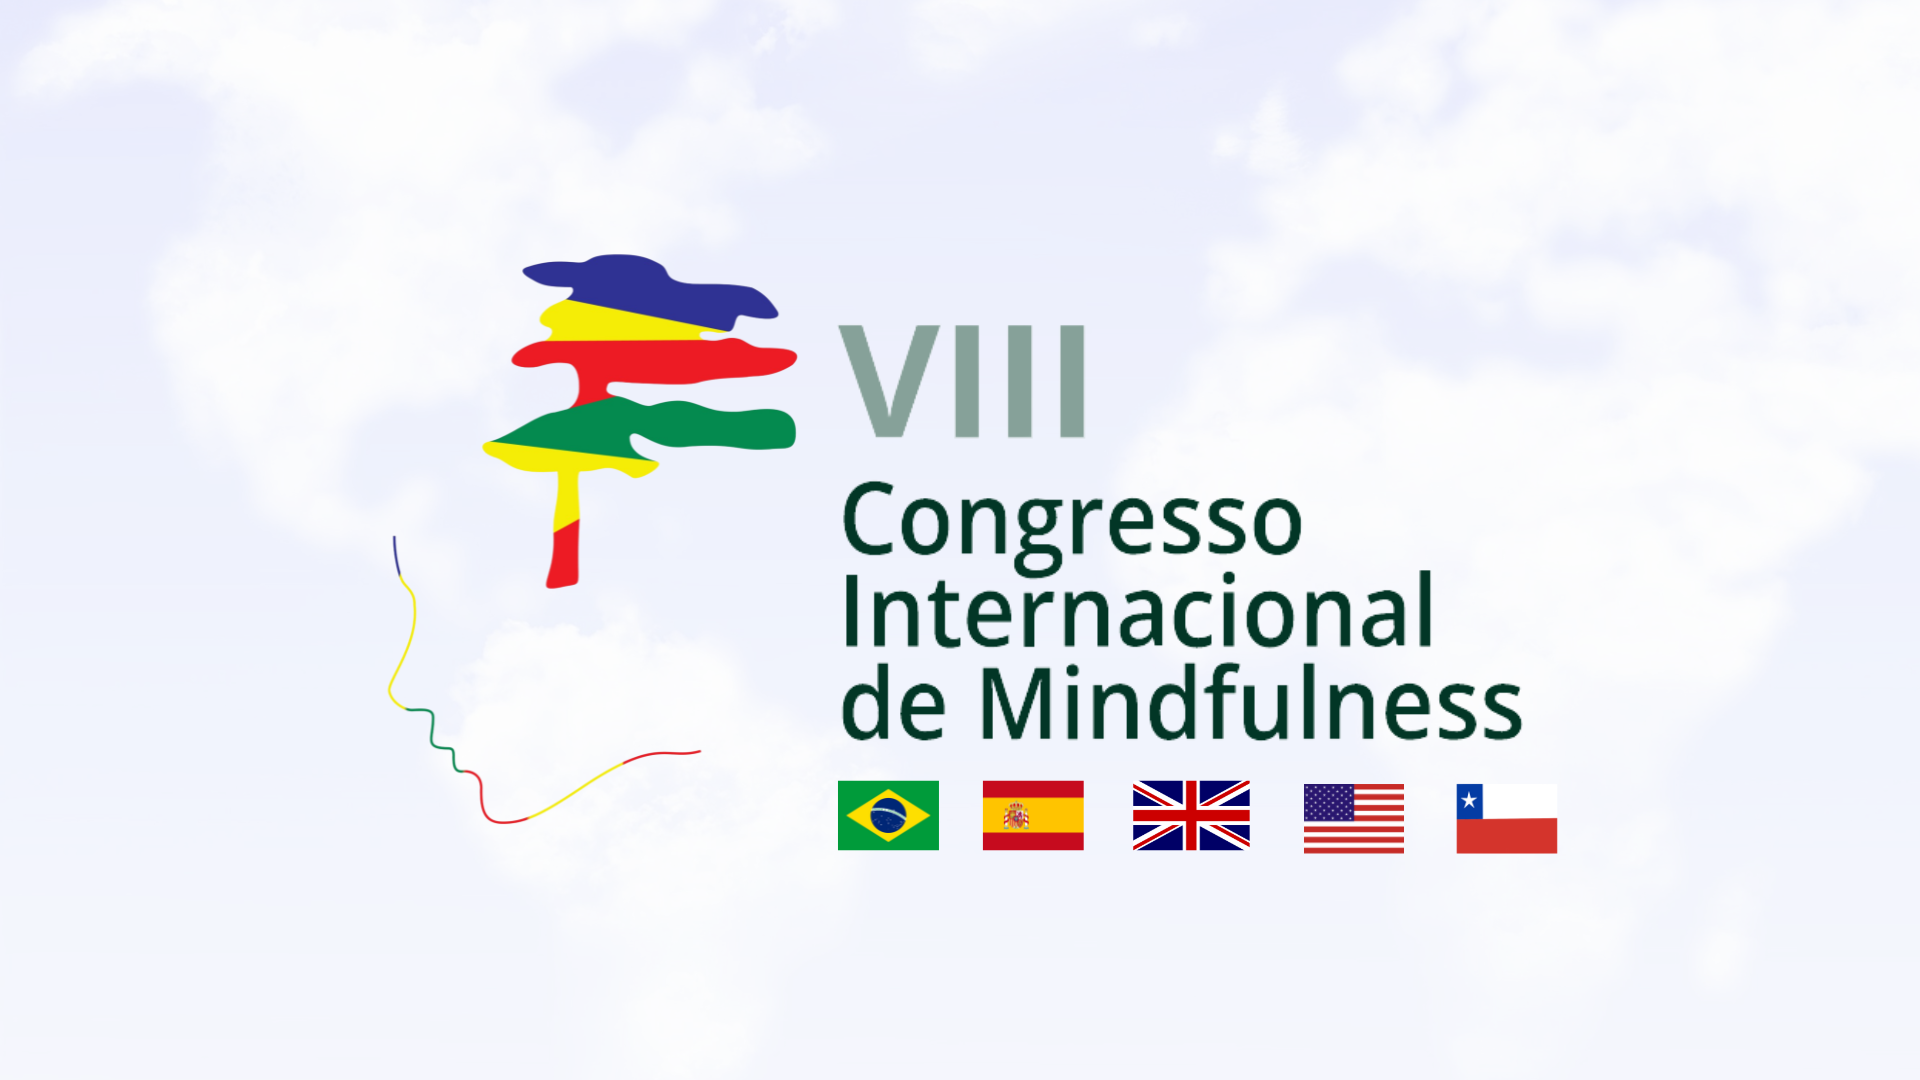 The logo for the viii congresso internacional de mindfulness